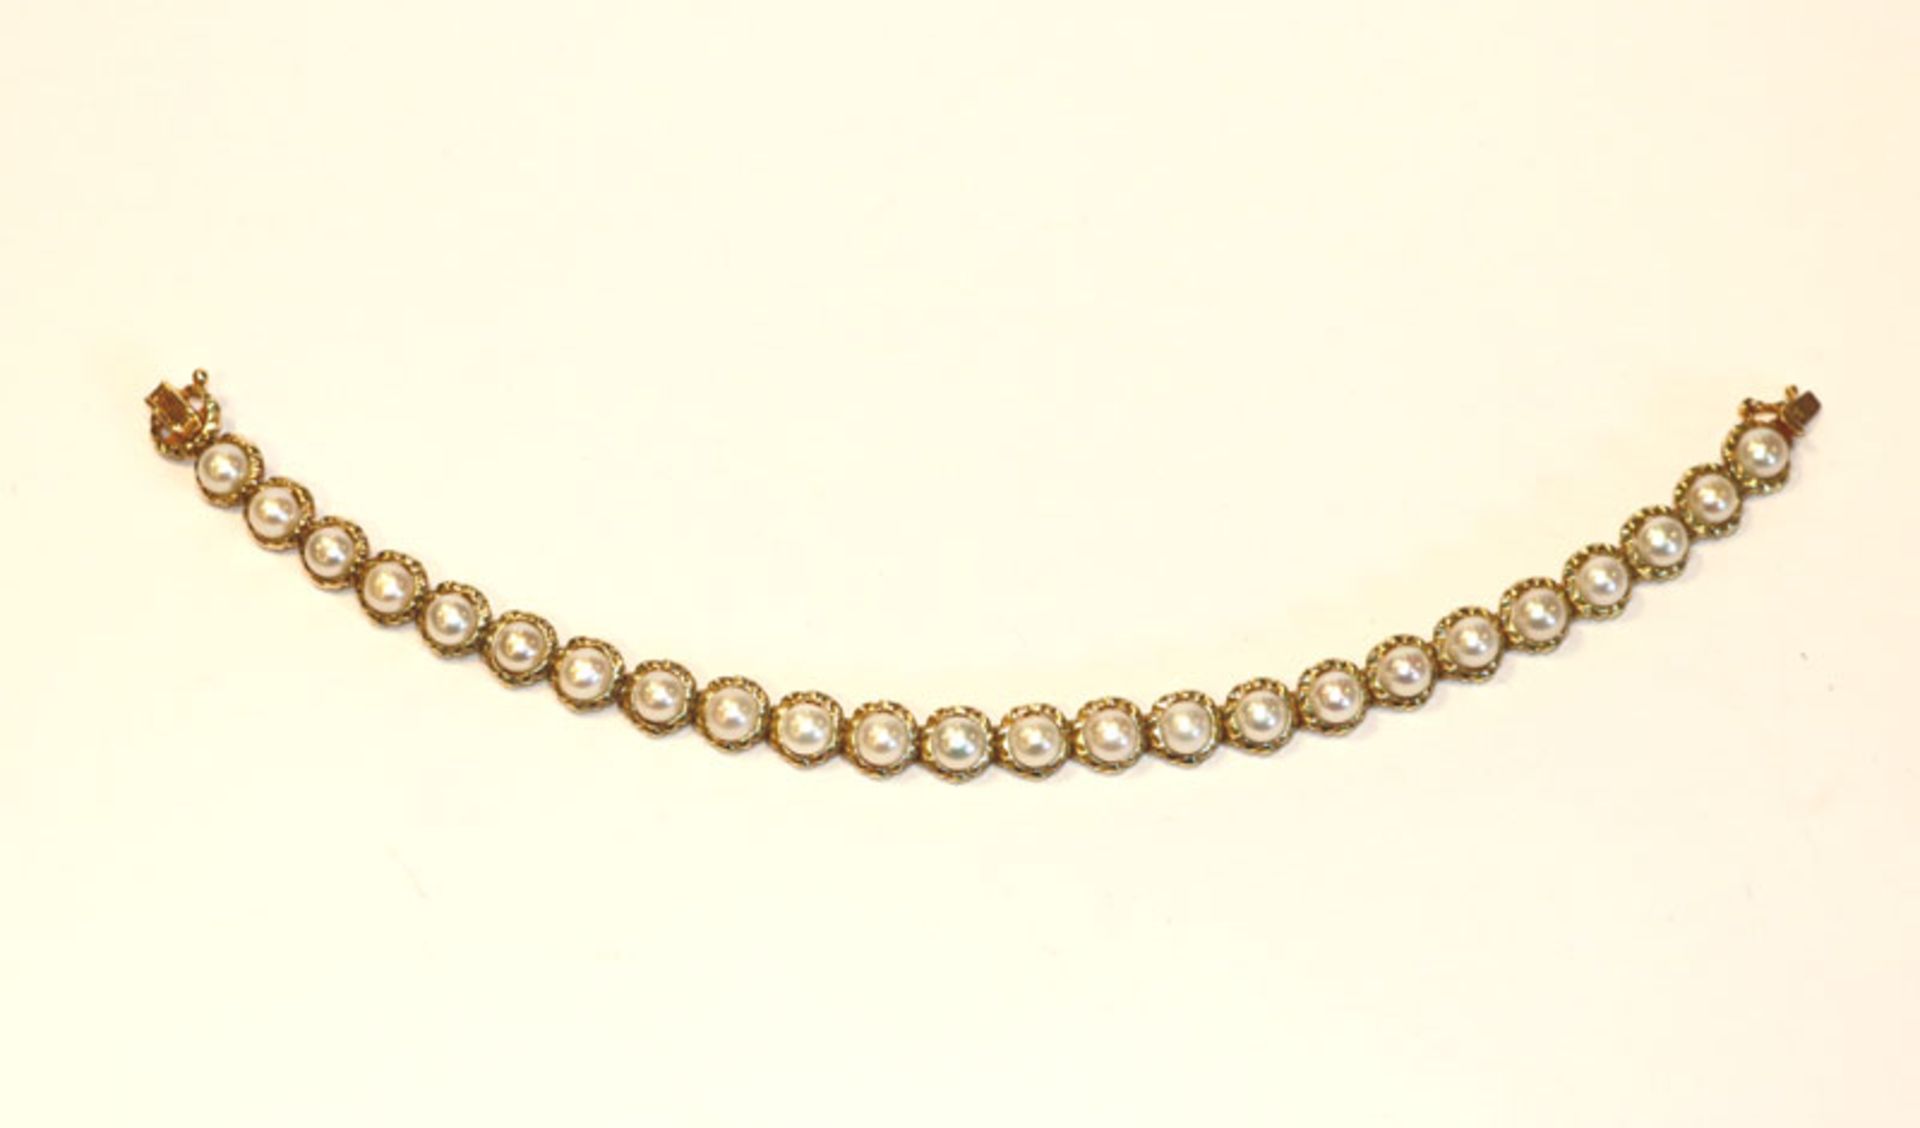 14 k Gelbgold Armband mit Perlen, 21 gr., L 19 cm, passend zu Lot 49 und 51